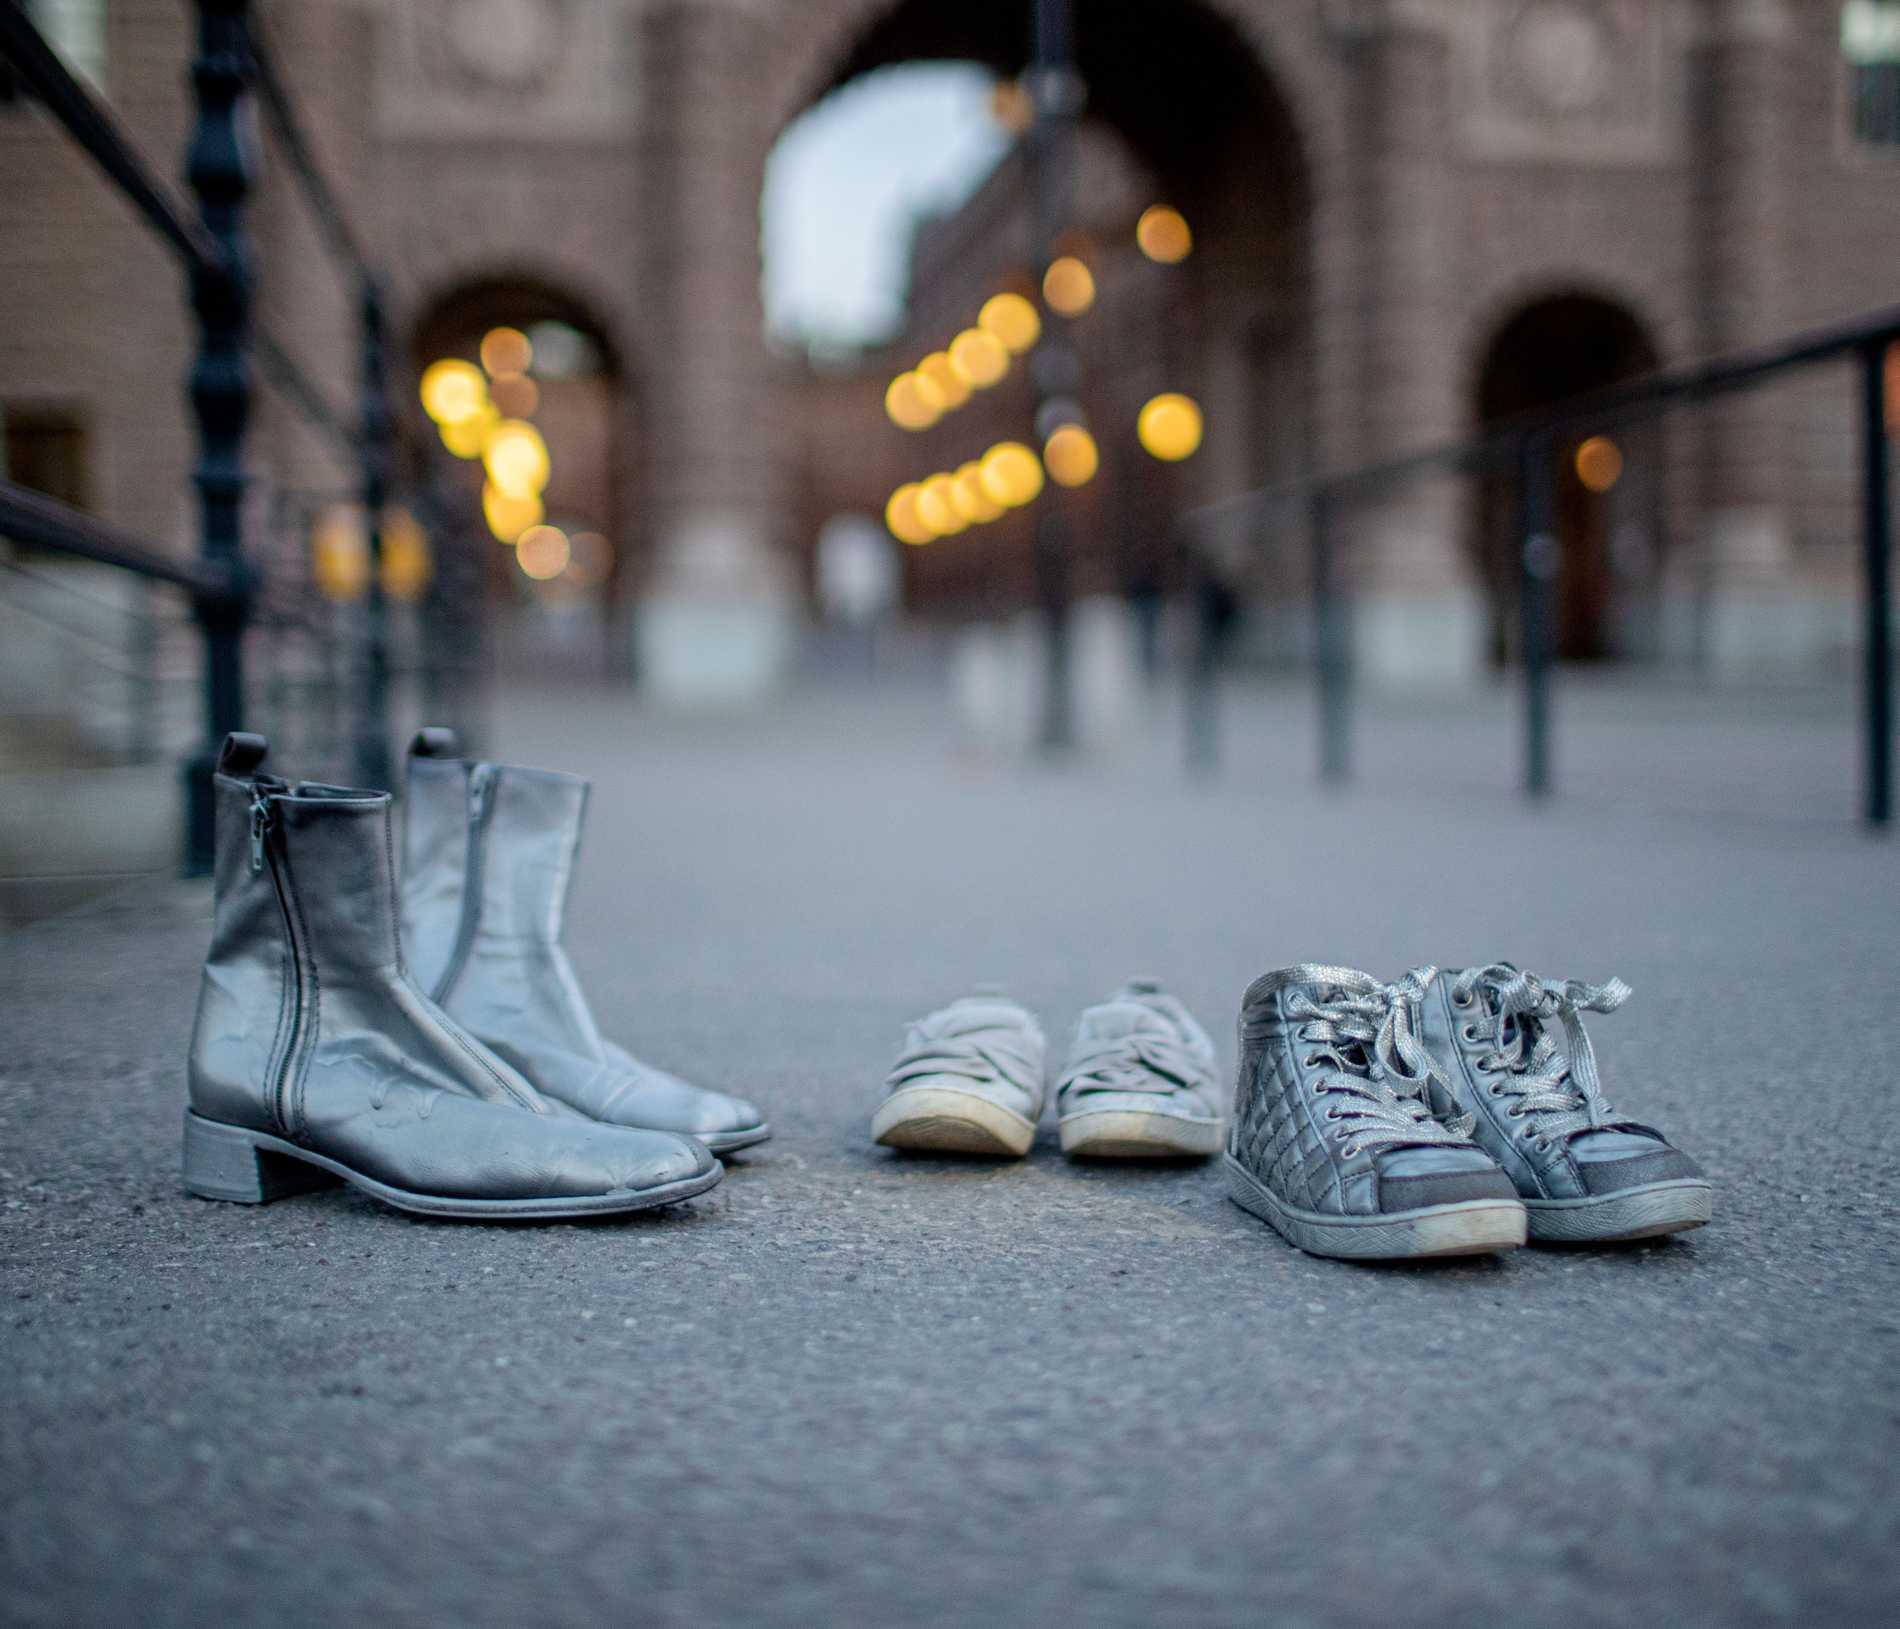 I fjol ordnade nätverket Gömda kvinnor aktioner över landet. Runt om i städer ställdes skor ut. De slitna skorna är symbolen de gömda kvinnorna valt för sina aktioner. De ska föra tankarna till en osynlig befolkning, som finns men inte får synas.